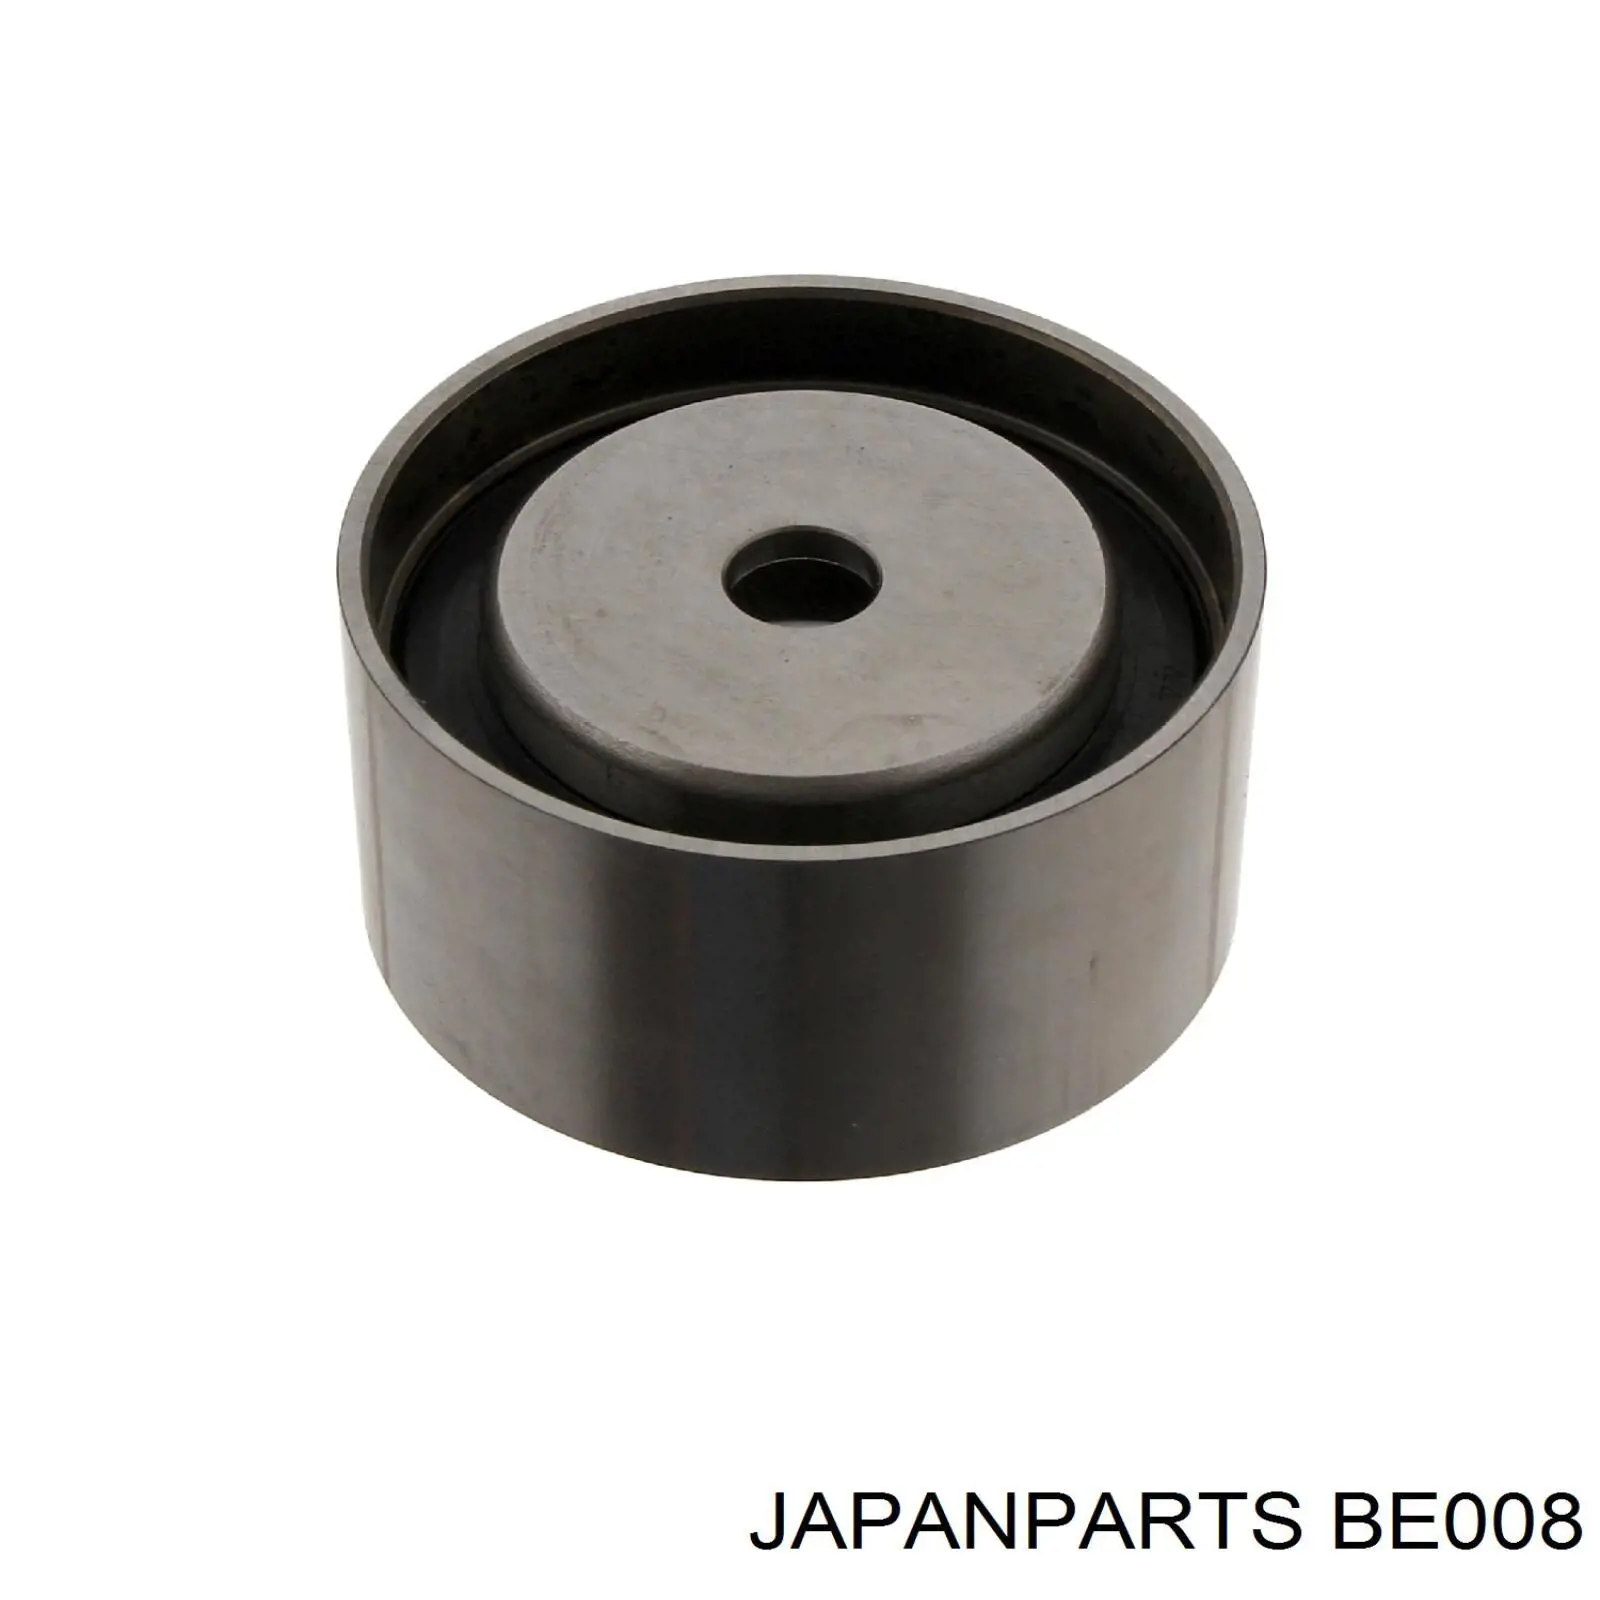 BE-008 Japan Parts polea tensora, correa poli v